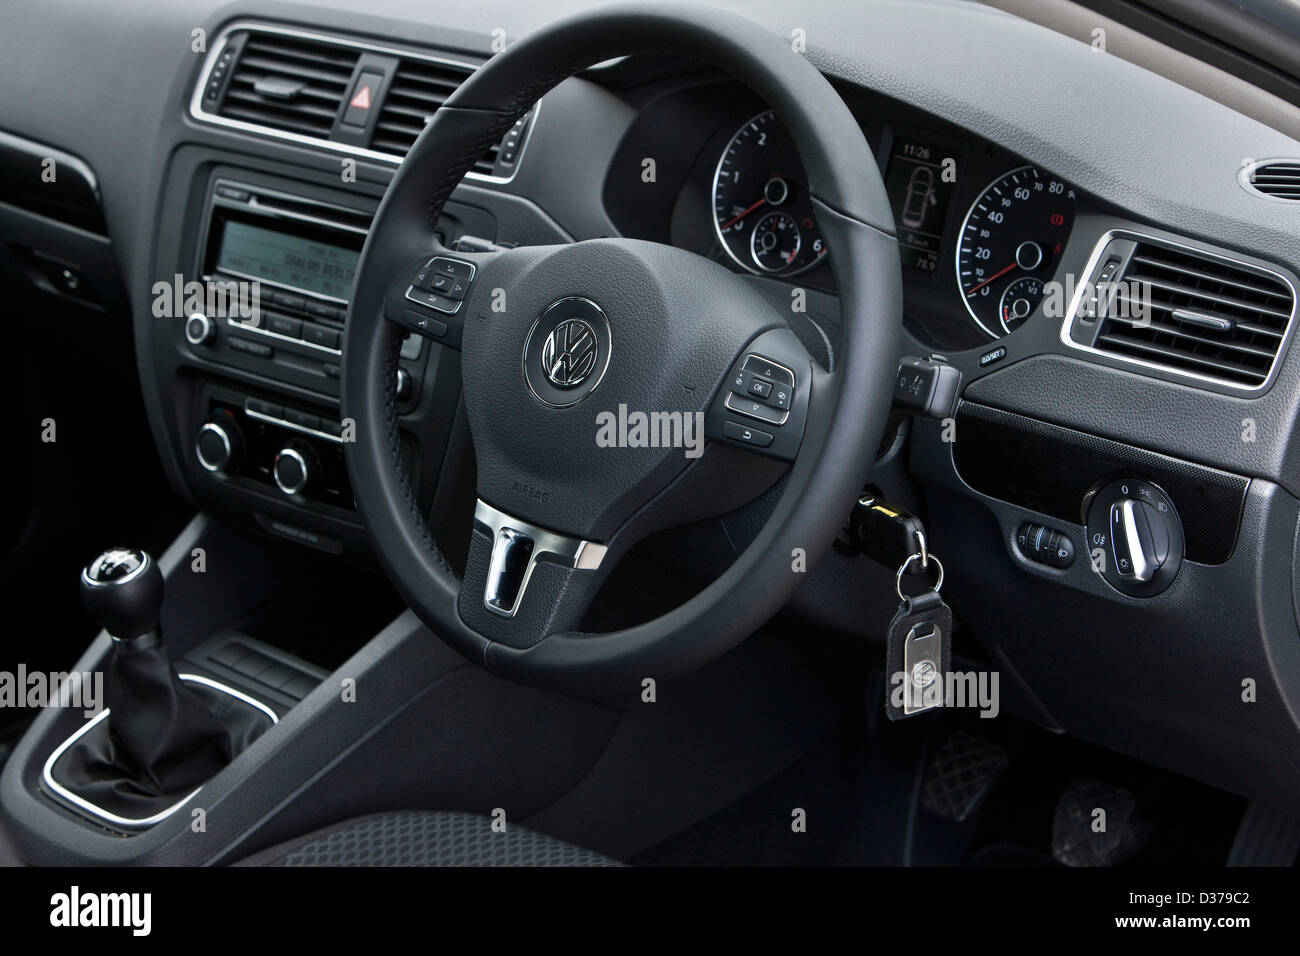 Volant de direction avec clé dans le contact, VW Jetta moyennes des voitures allemandes, Southampton, UK 136 2011 Banque D'Images